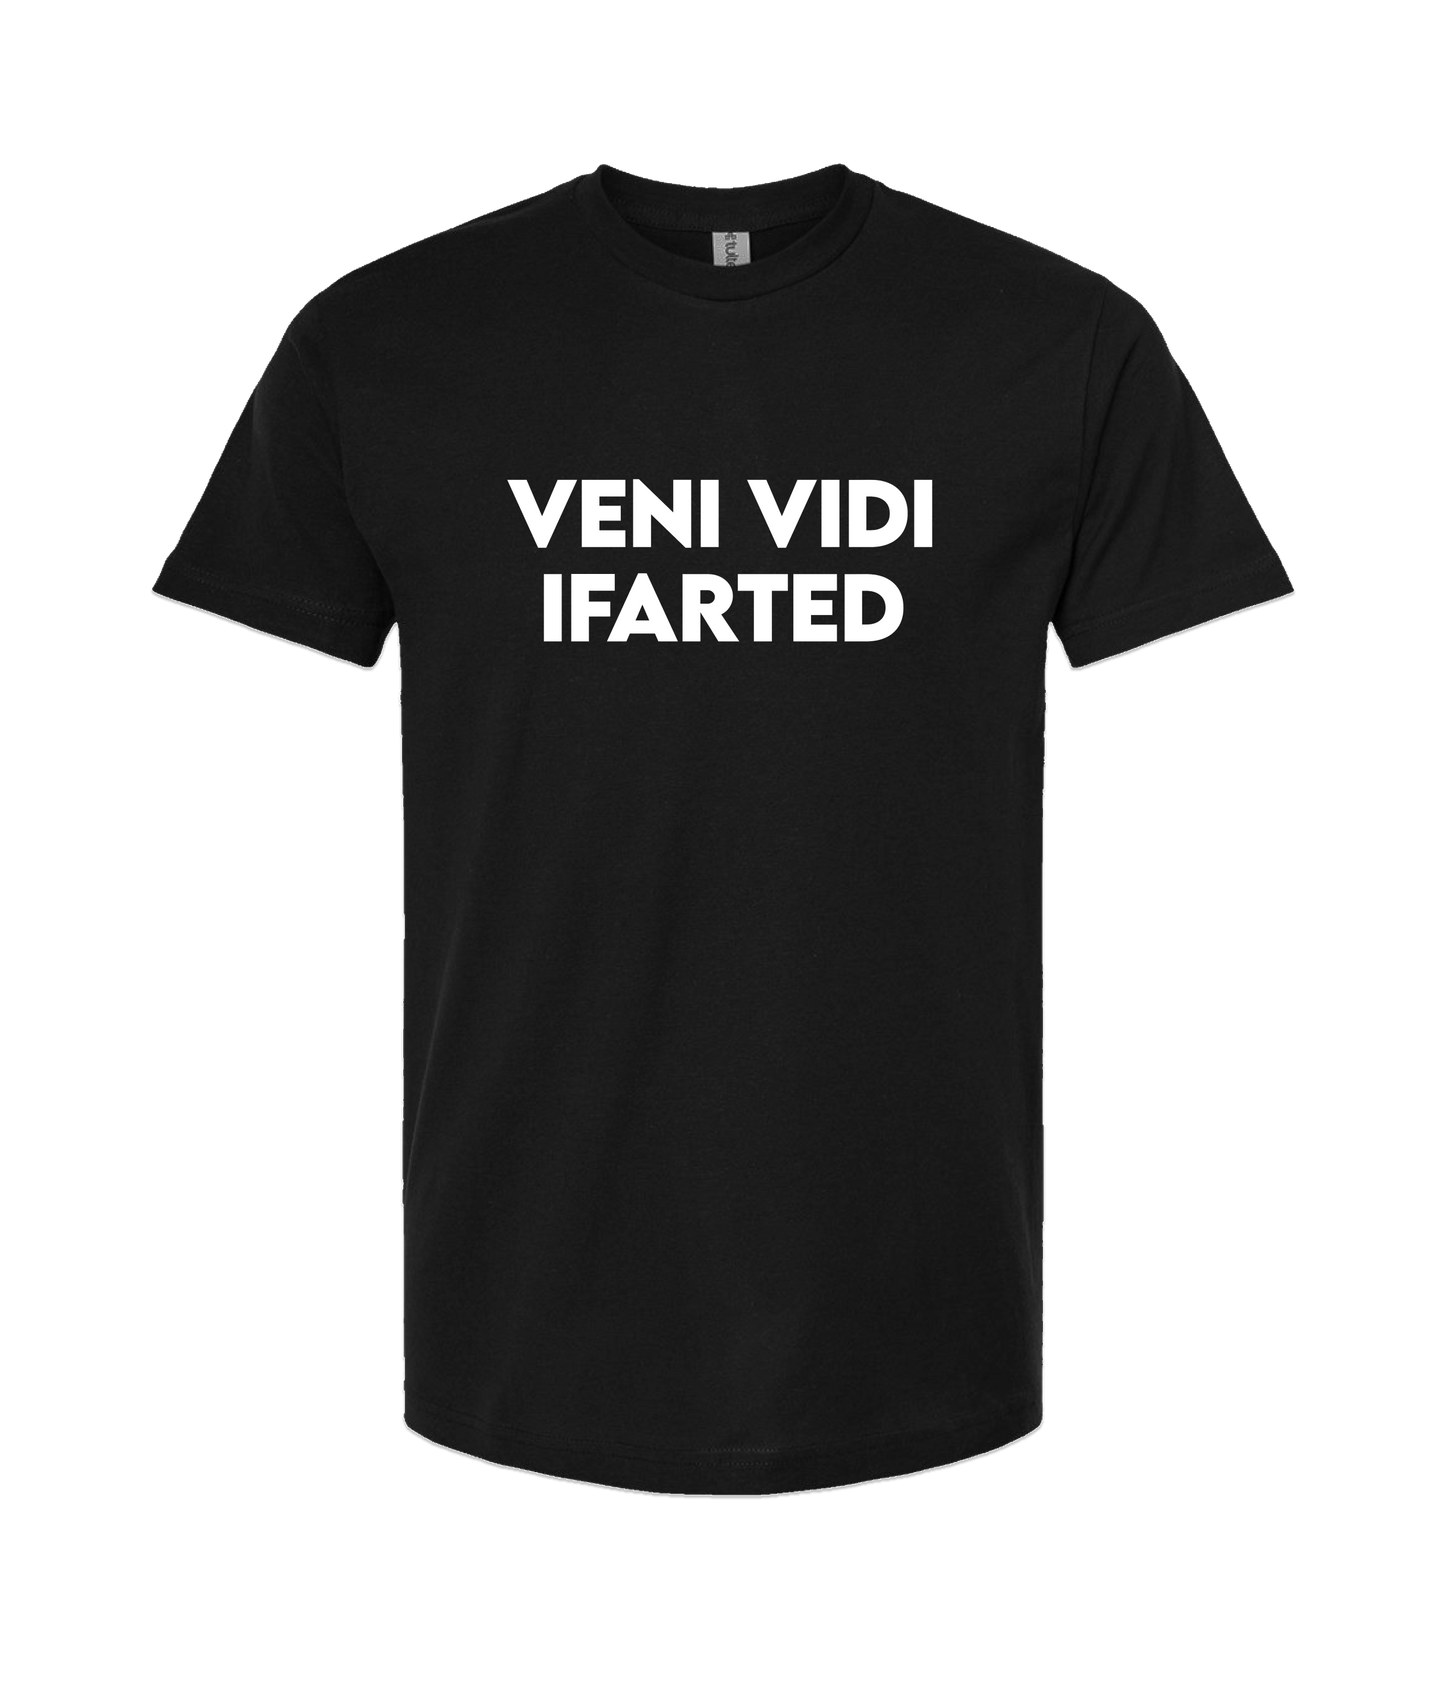 iFart - VENI VIDI - Black T-Shirt